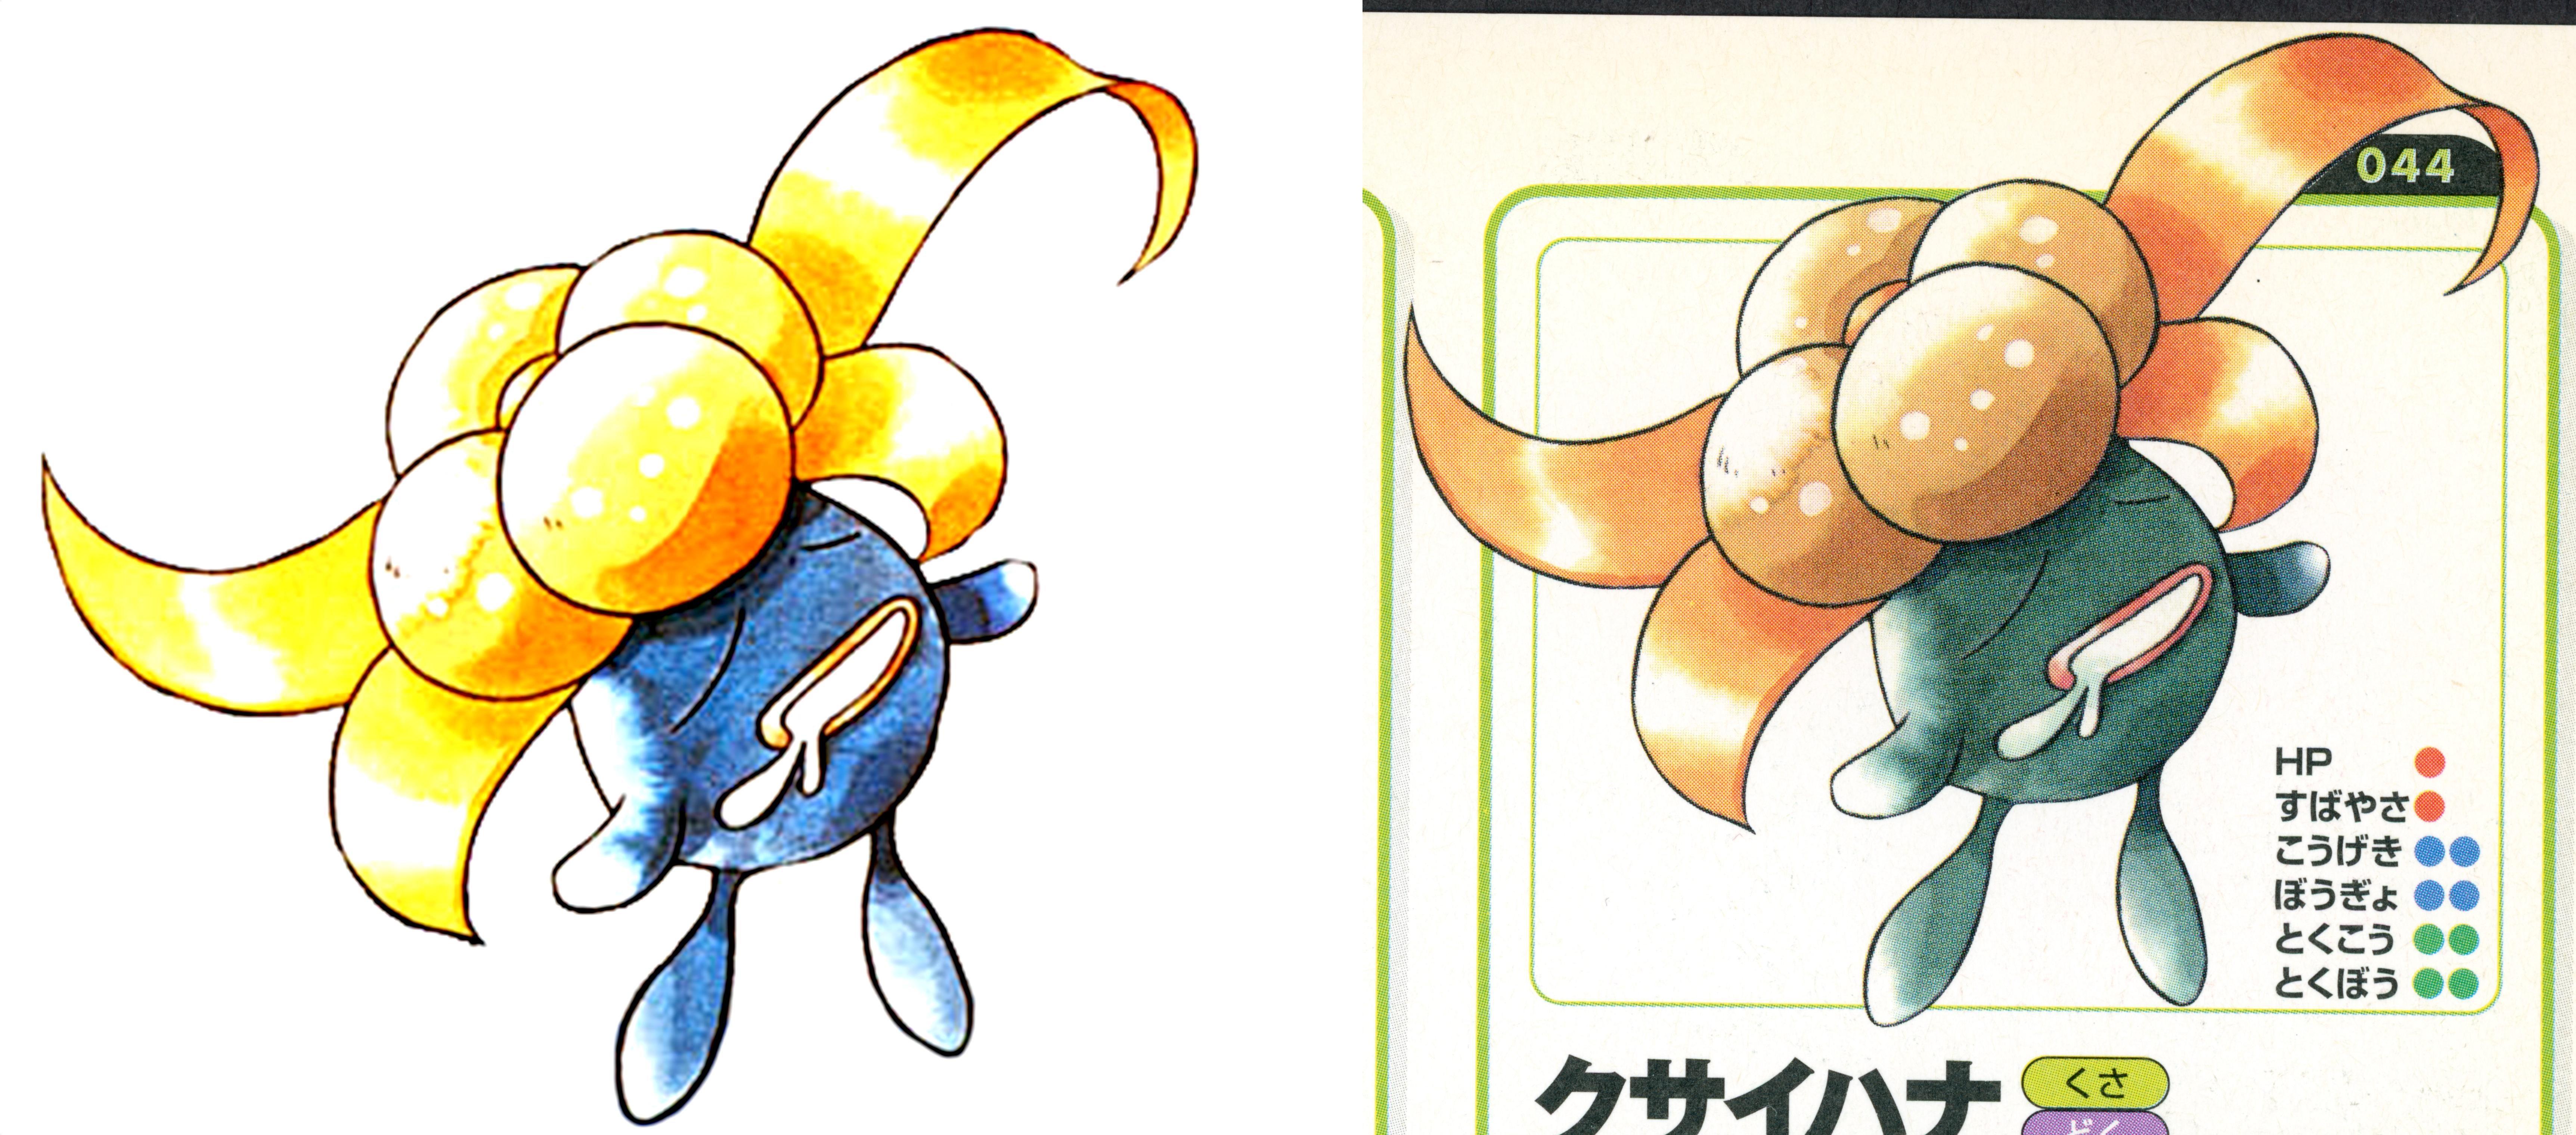 Duas imagens da arte de Sugimori são mostradas em Gloom com uma delas sendo desbotada.